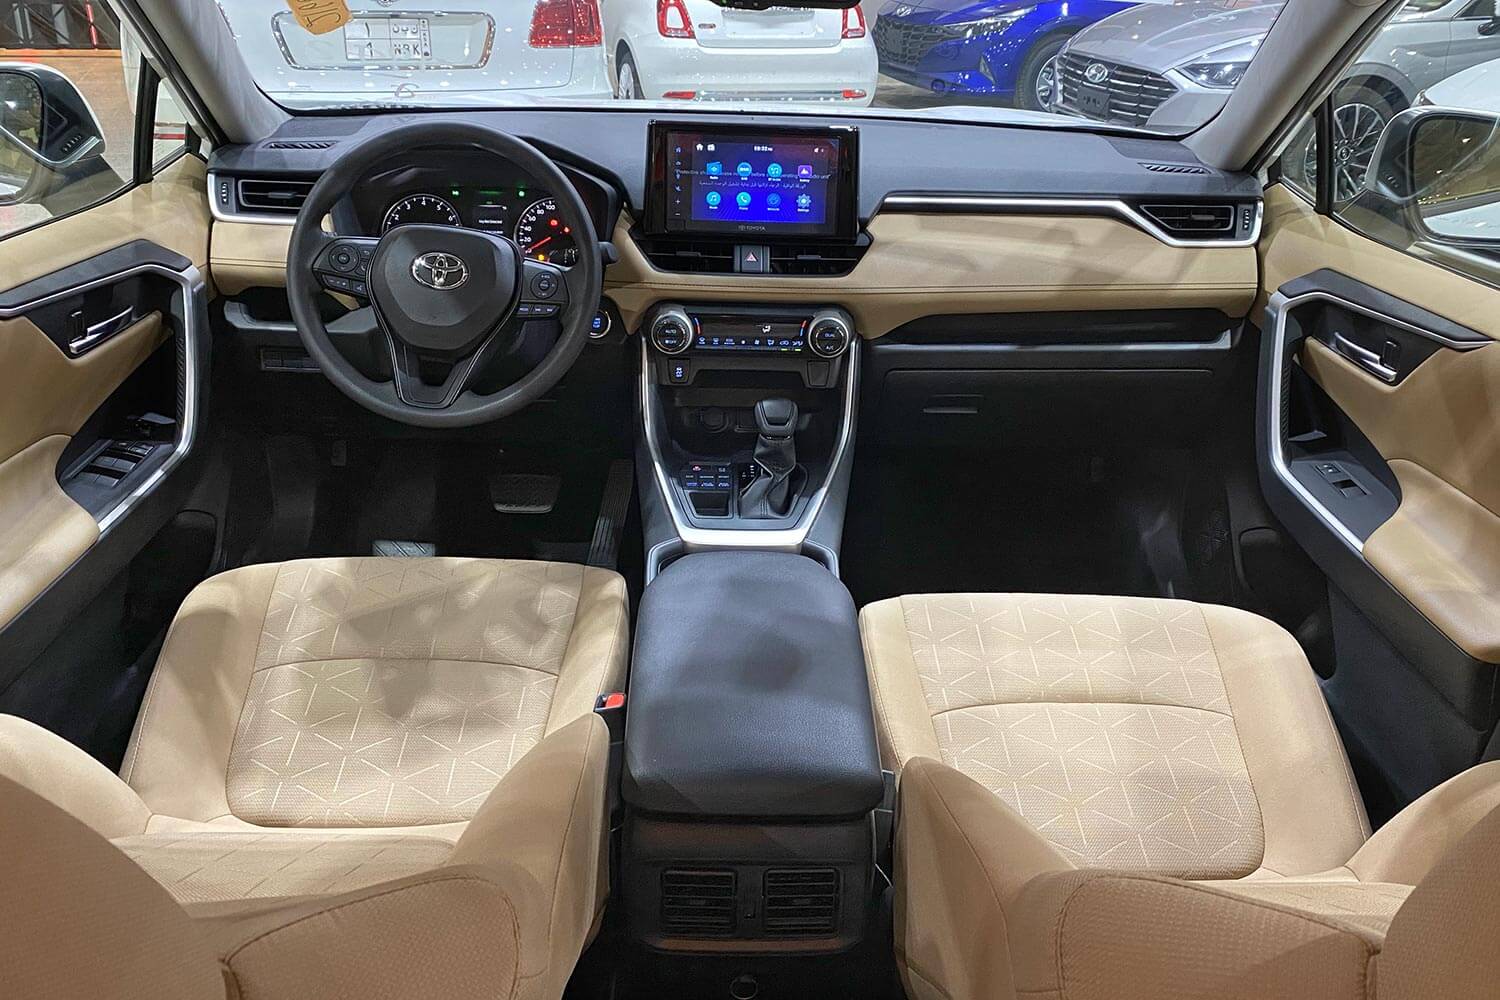 Toyota rav4 2021 price in ksa